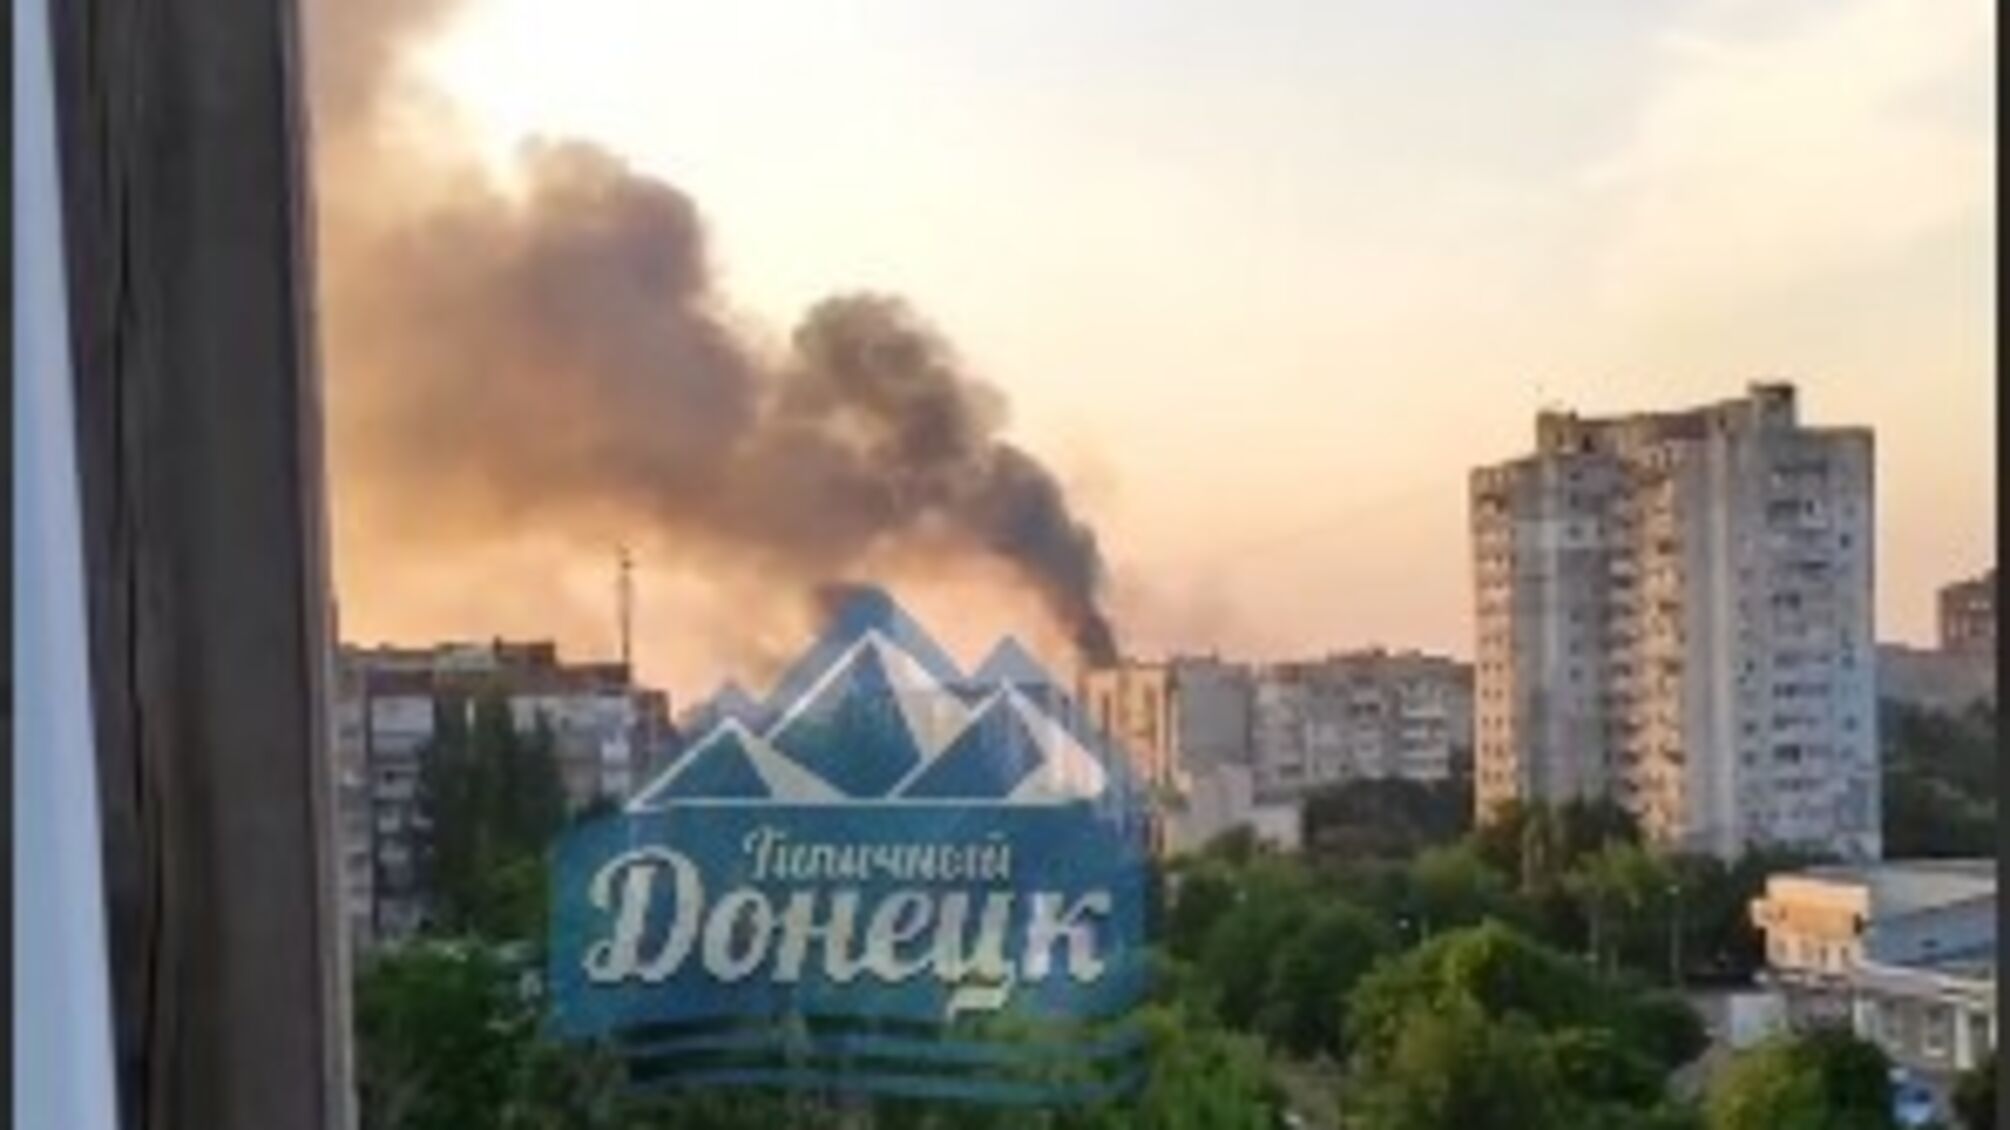 ЗМІ повідомляють про обстріл центру Донецька